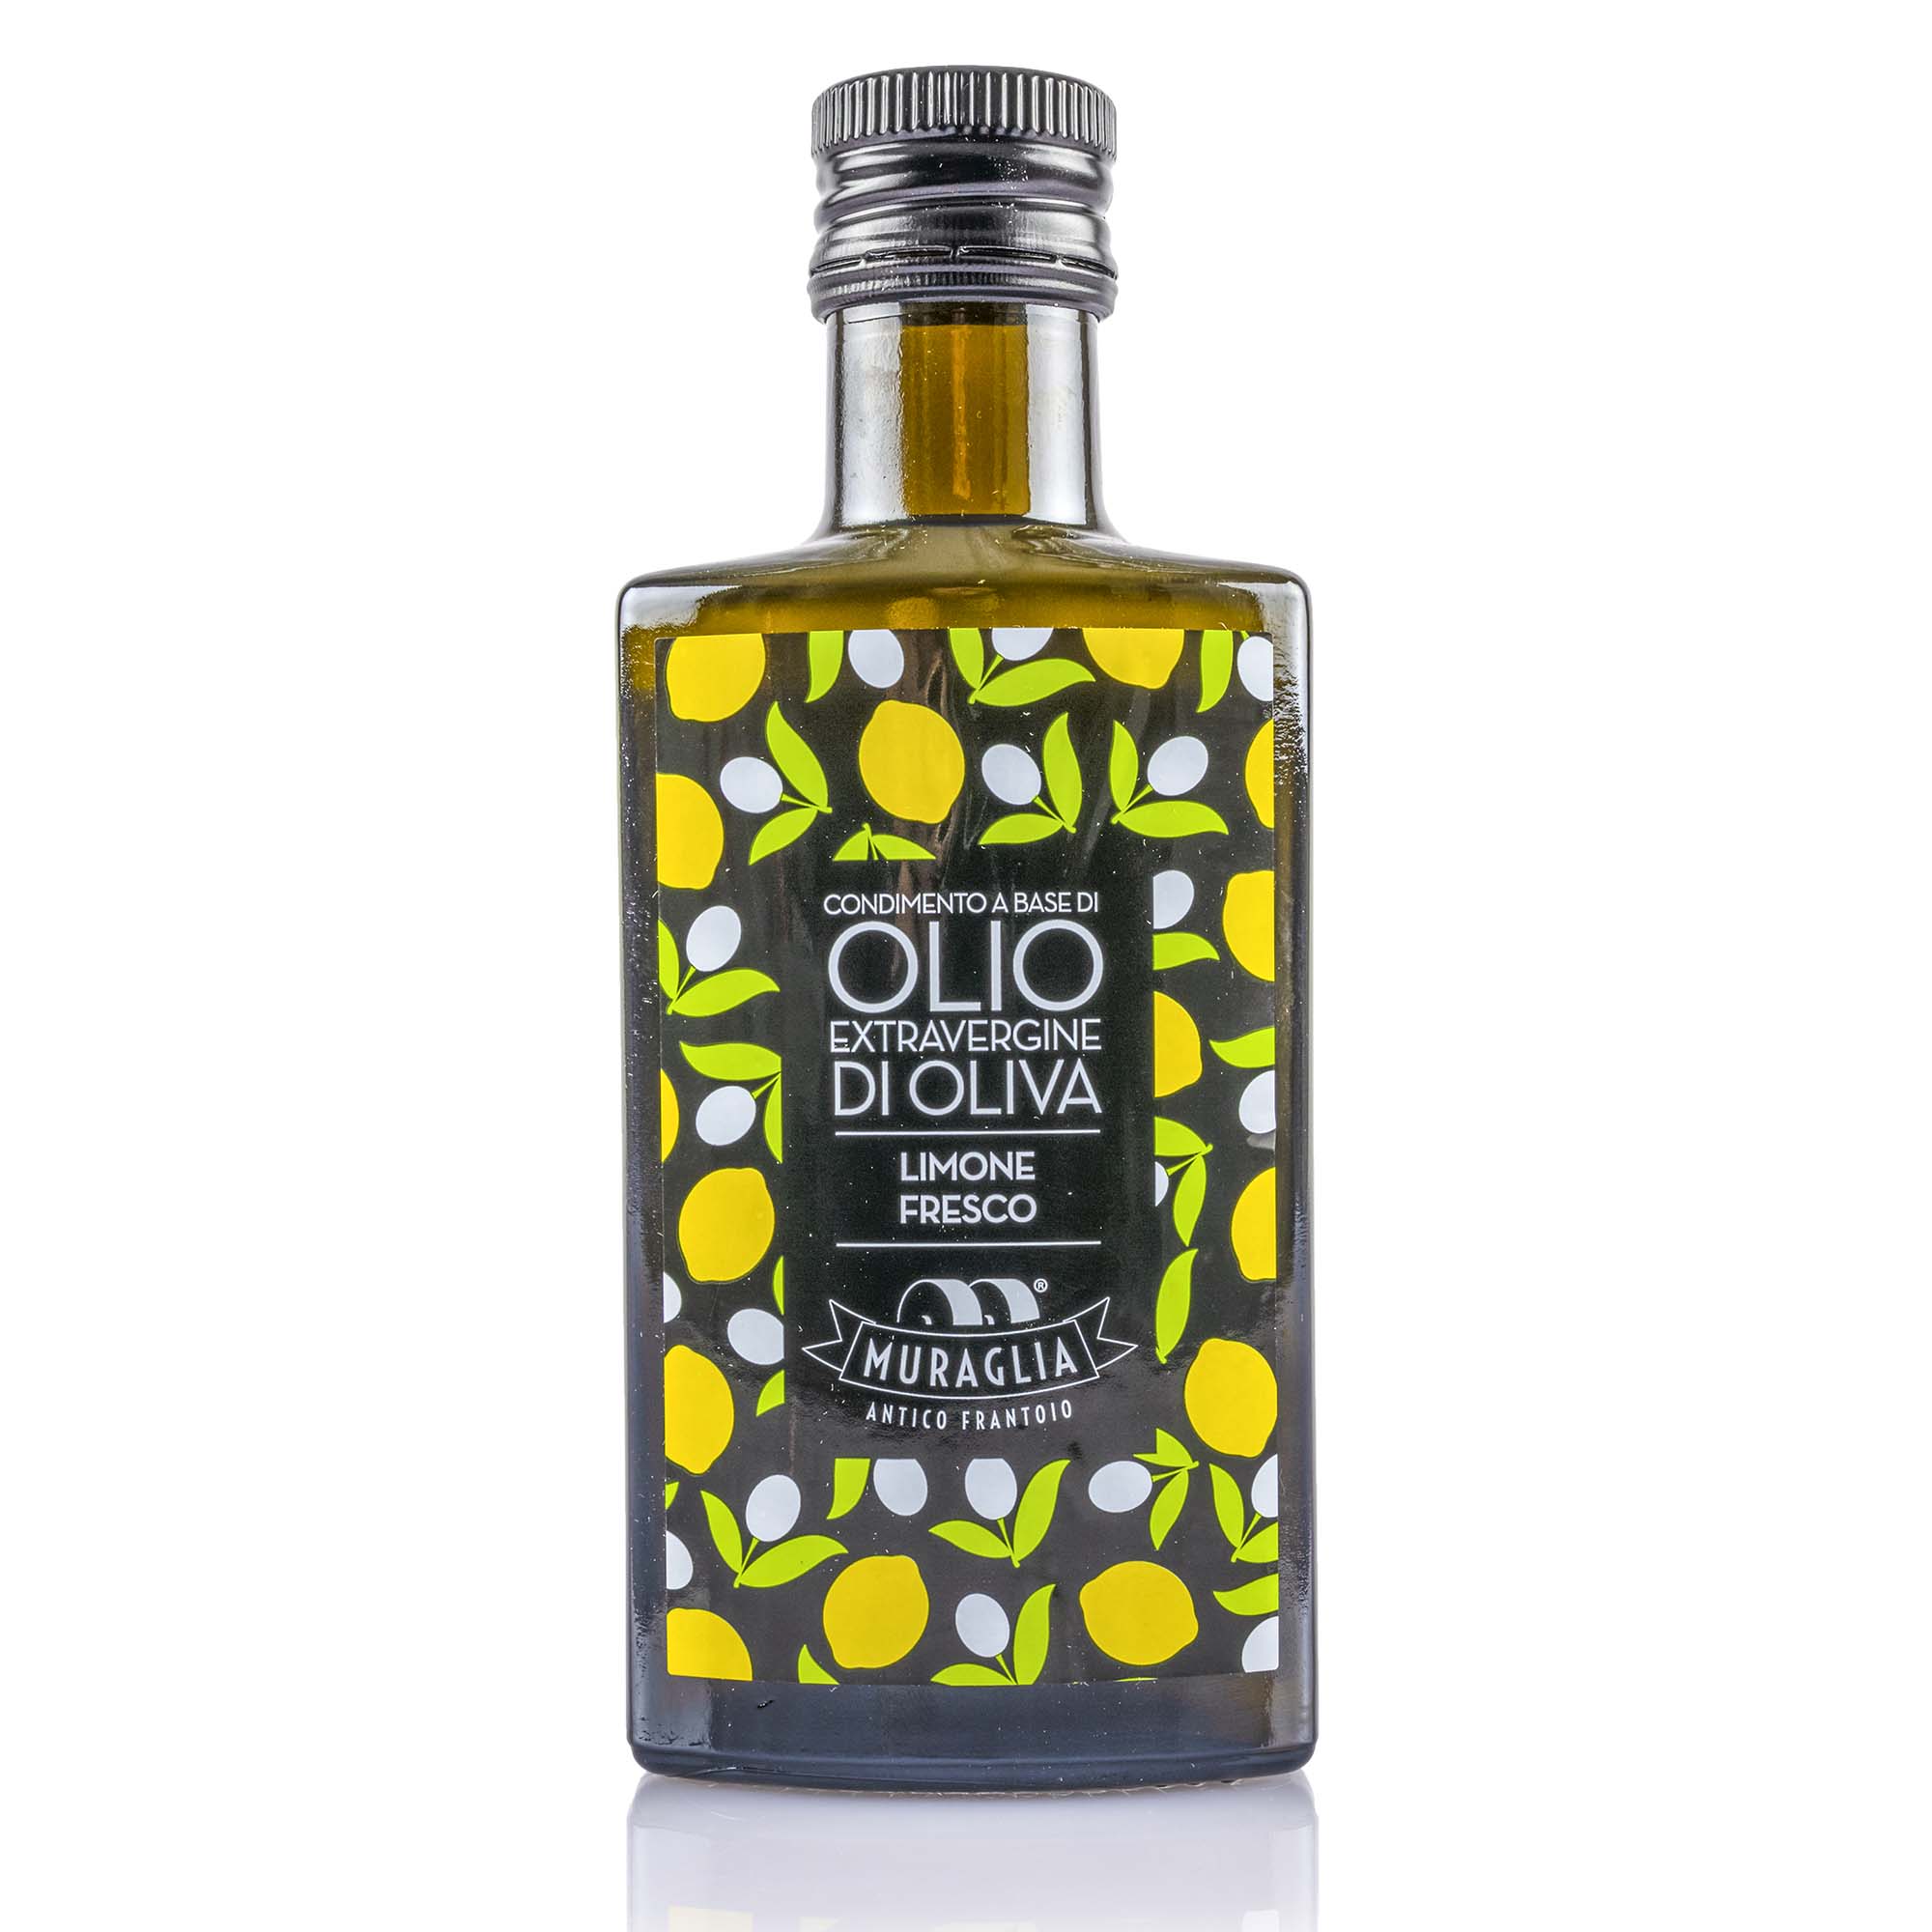 Olio extra vergine di oliva, Muraglia, Limone, 200ml